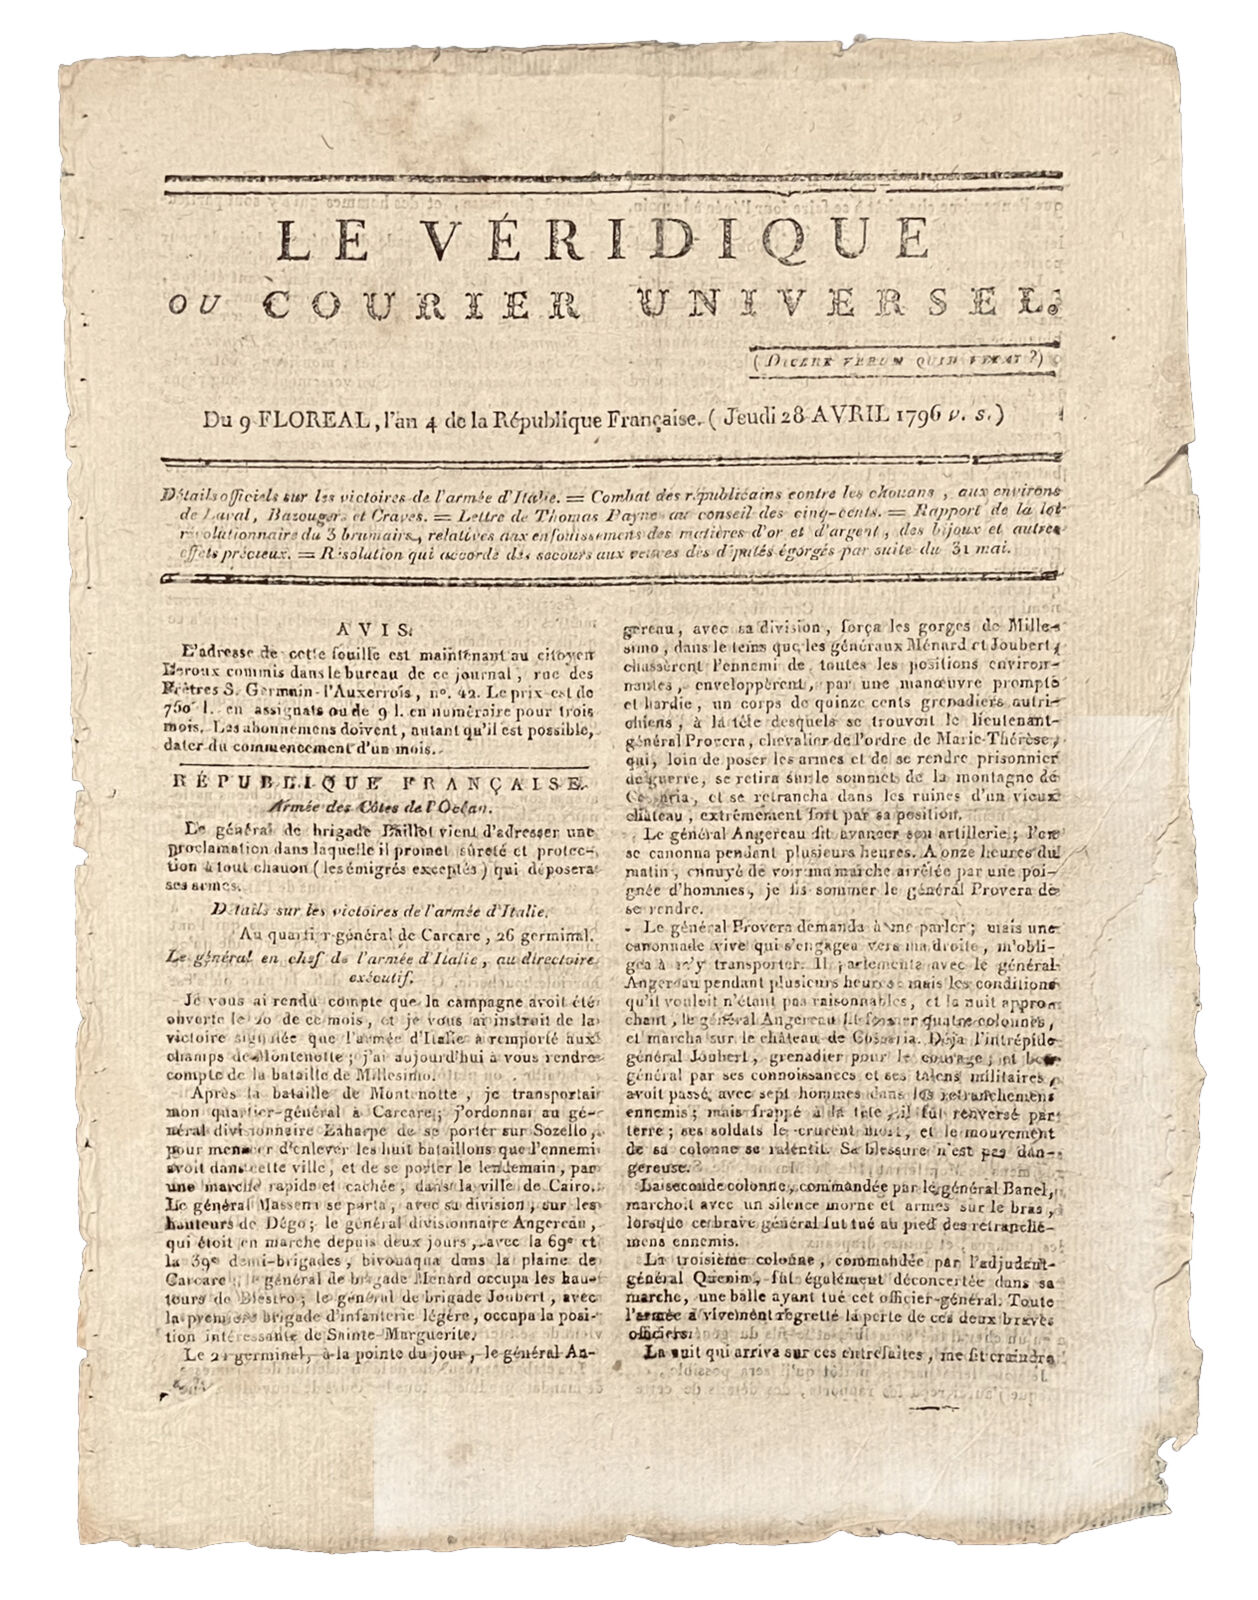 LE VERIDIQUE or COURIER UNVIVERSEL April 28, 1796 Victories of General Bonaparte